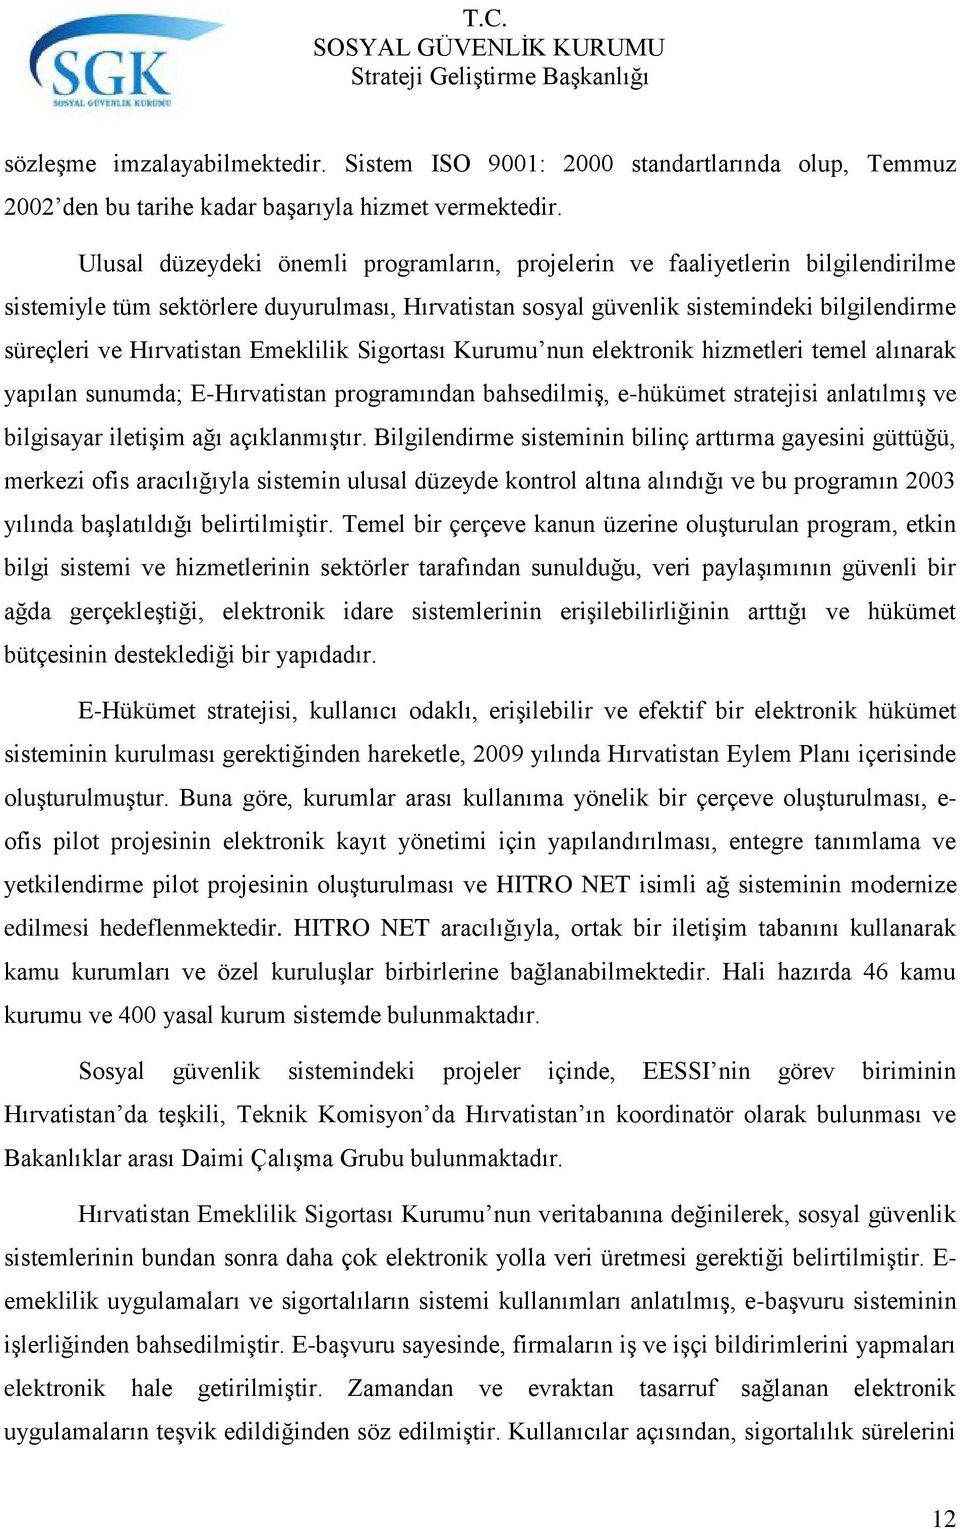 Hırvatistan Emeklilik Sigortası Kurumu nun elektronik hizmetleri temel alınarak yapılan sunumda; E-Hırvatistan programından bahsedilmiş, e-hükümet stratejisi anlatılmış ve bilgisayar iletişim ağı